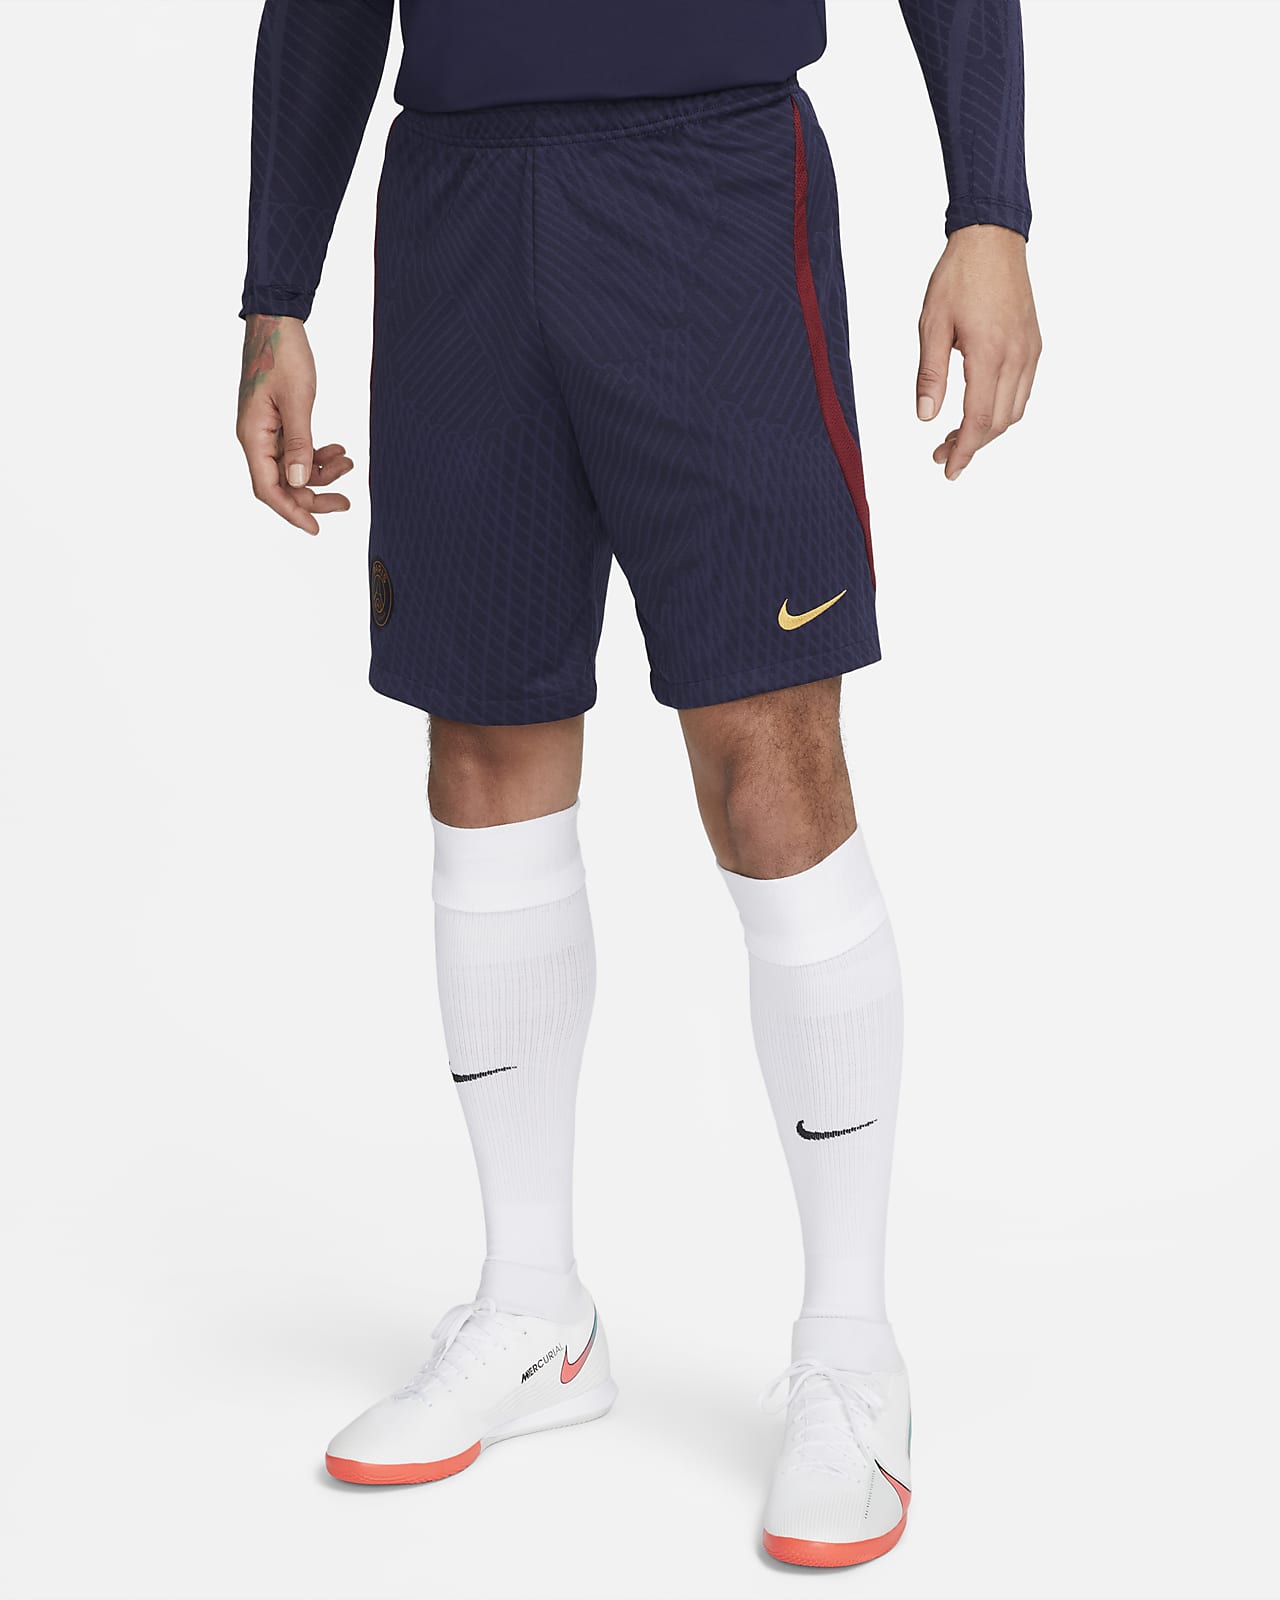 Paris Saint-Germain Strike 男款 Nike Dri-FIT 針織足球短褲